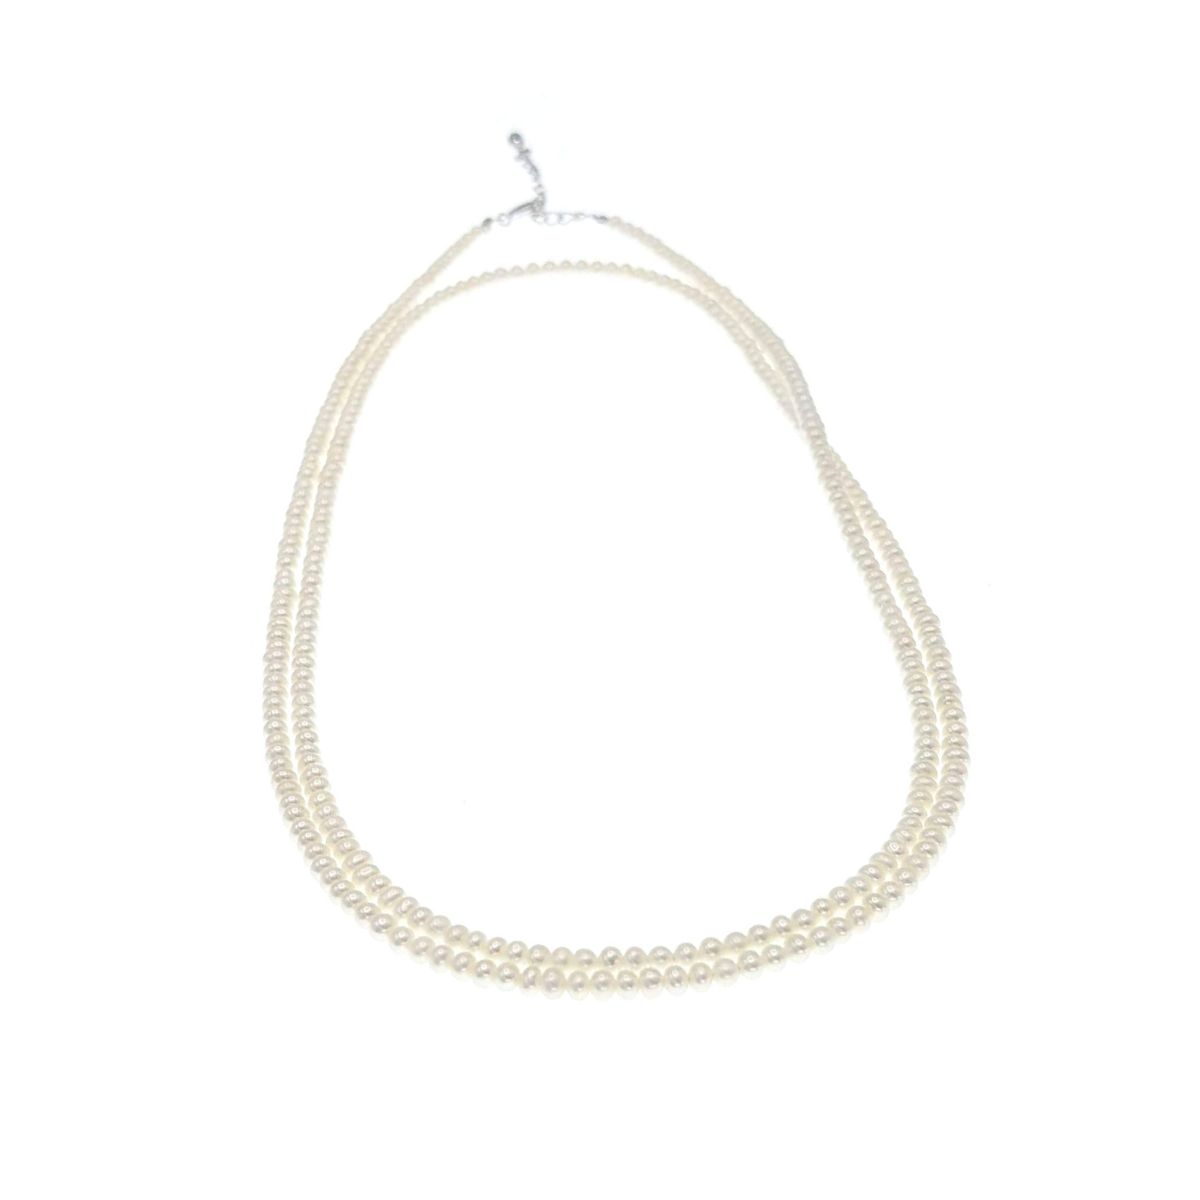 淡水真珠 ネックレス | 三重県真珠加工販売協同組合【MPO】